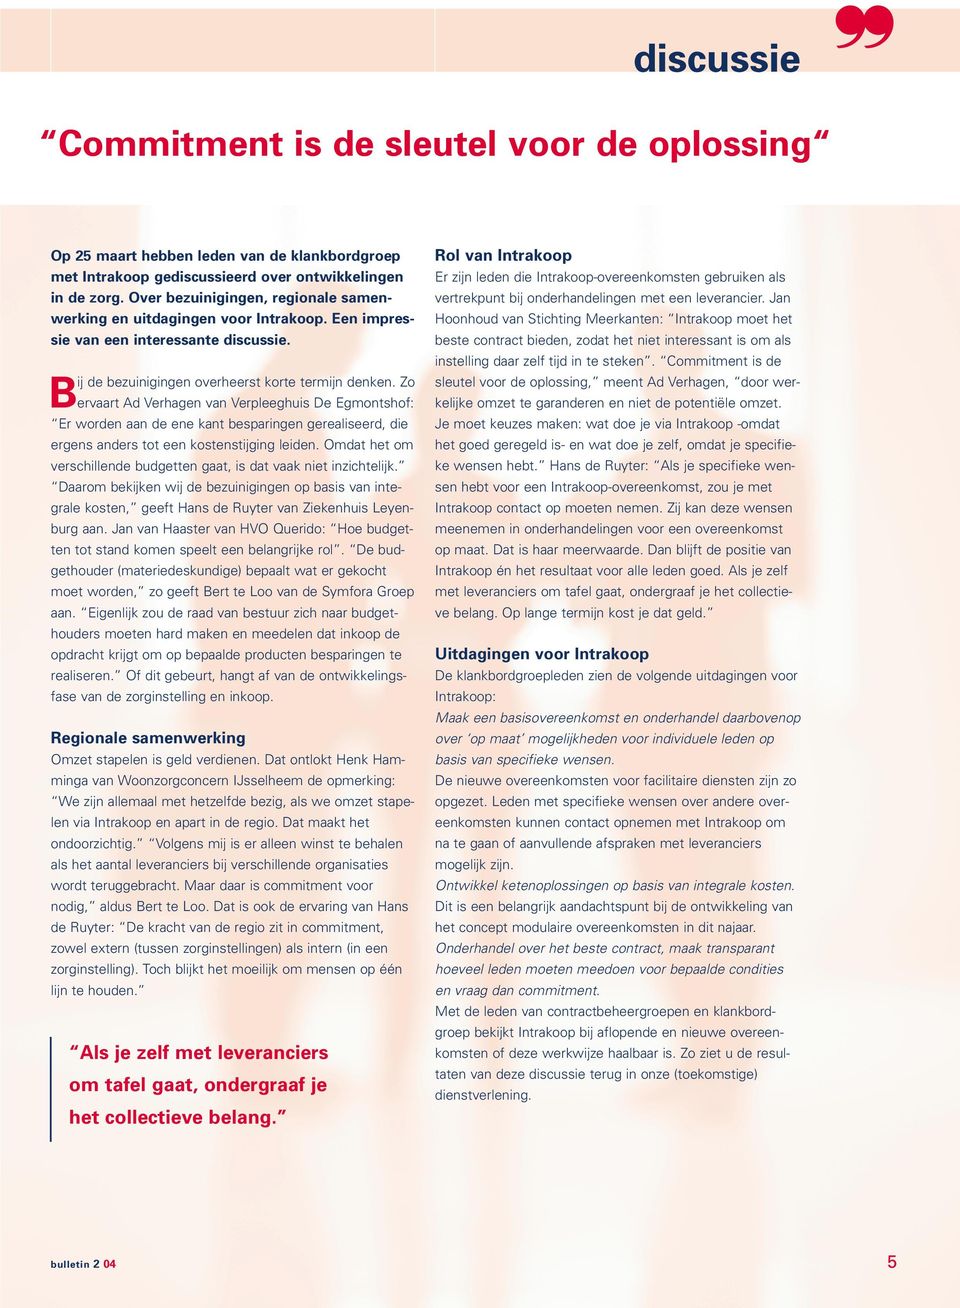 Zo ervaart Ad Verhagen van Verpleeghuis De Egmontshof: Er worden aan de ene kant besparingen gerealiseerd, die ergens anders tot een kostenstijging leiden.